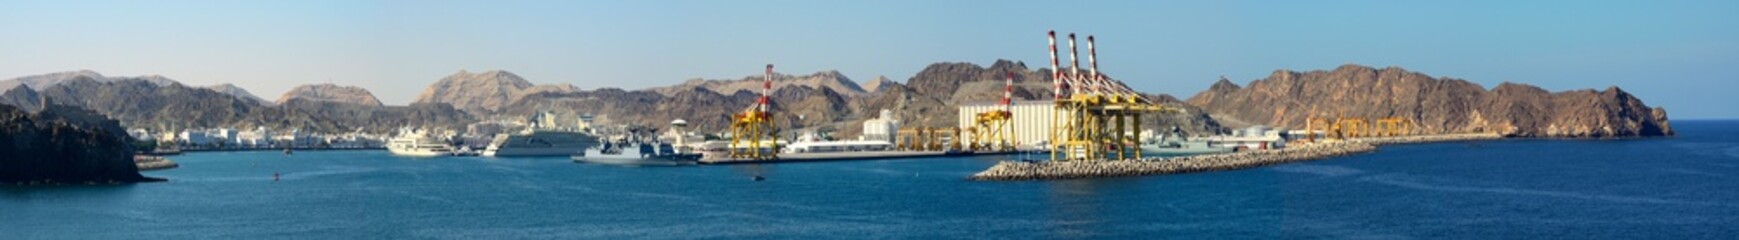 Panorámica de Sultan Qaboos Port, puerto de Mutrah, Sultanato de Omán